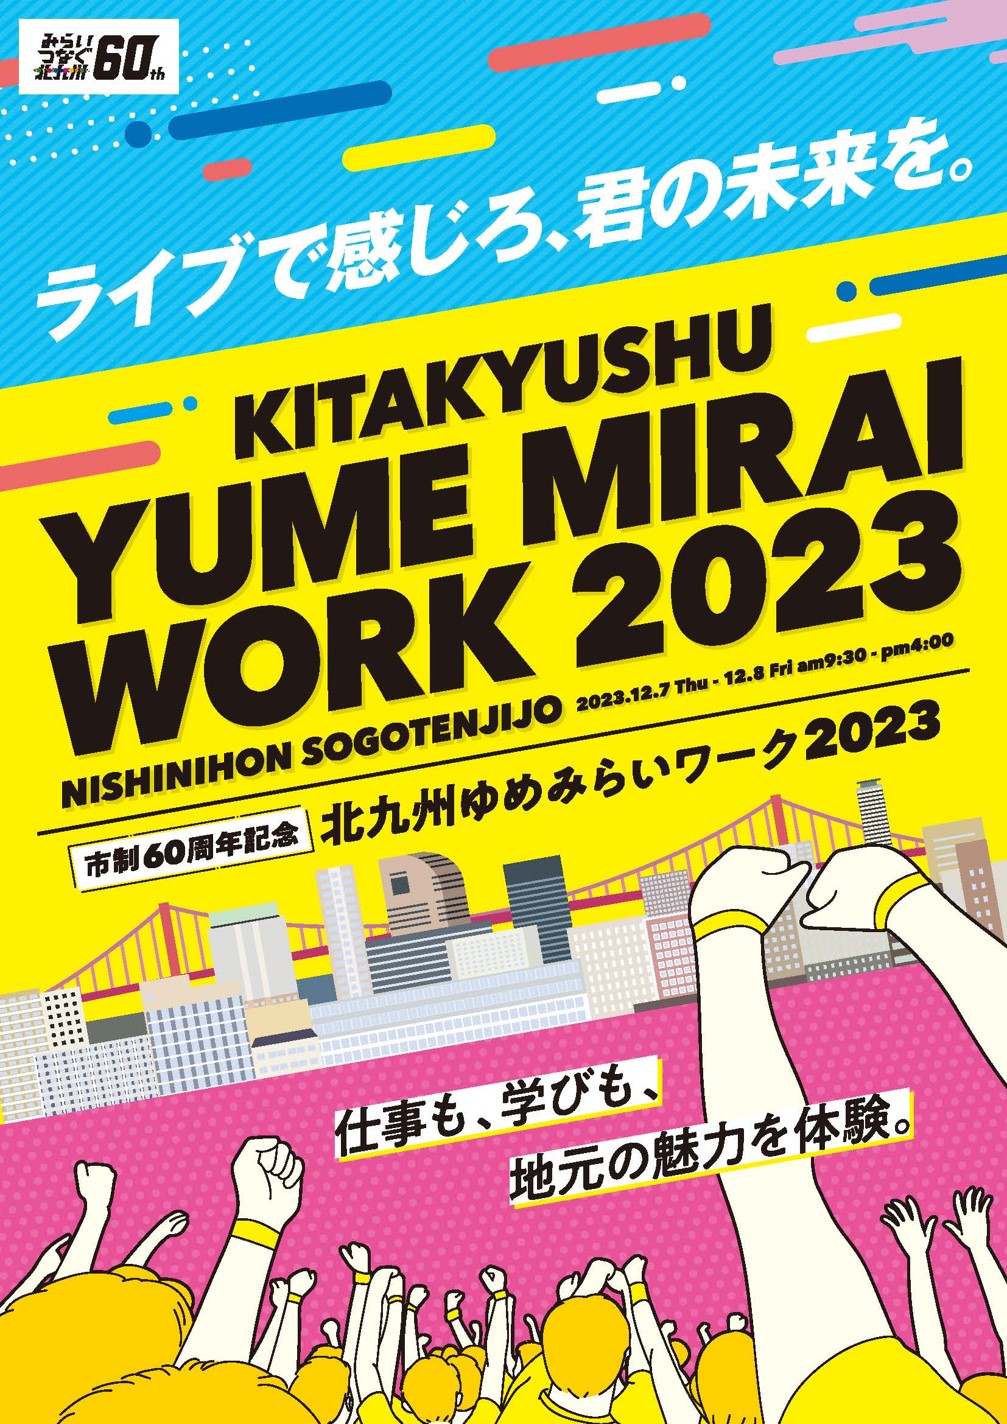 Wir werden auf der „Kitakyushu Yumemirai Work 2023“ ausstellen.